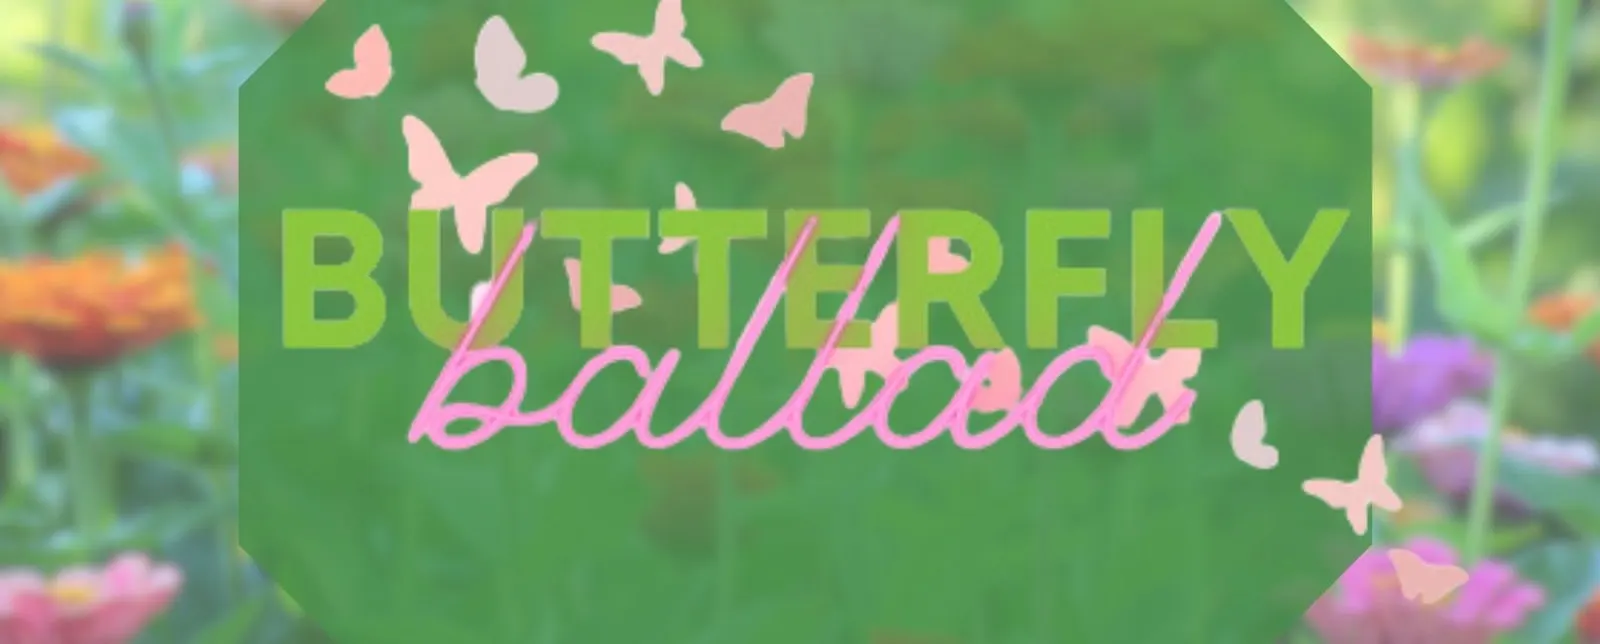 Puppet Palooza Saturdays: "Butterfly Ballad"